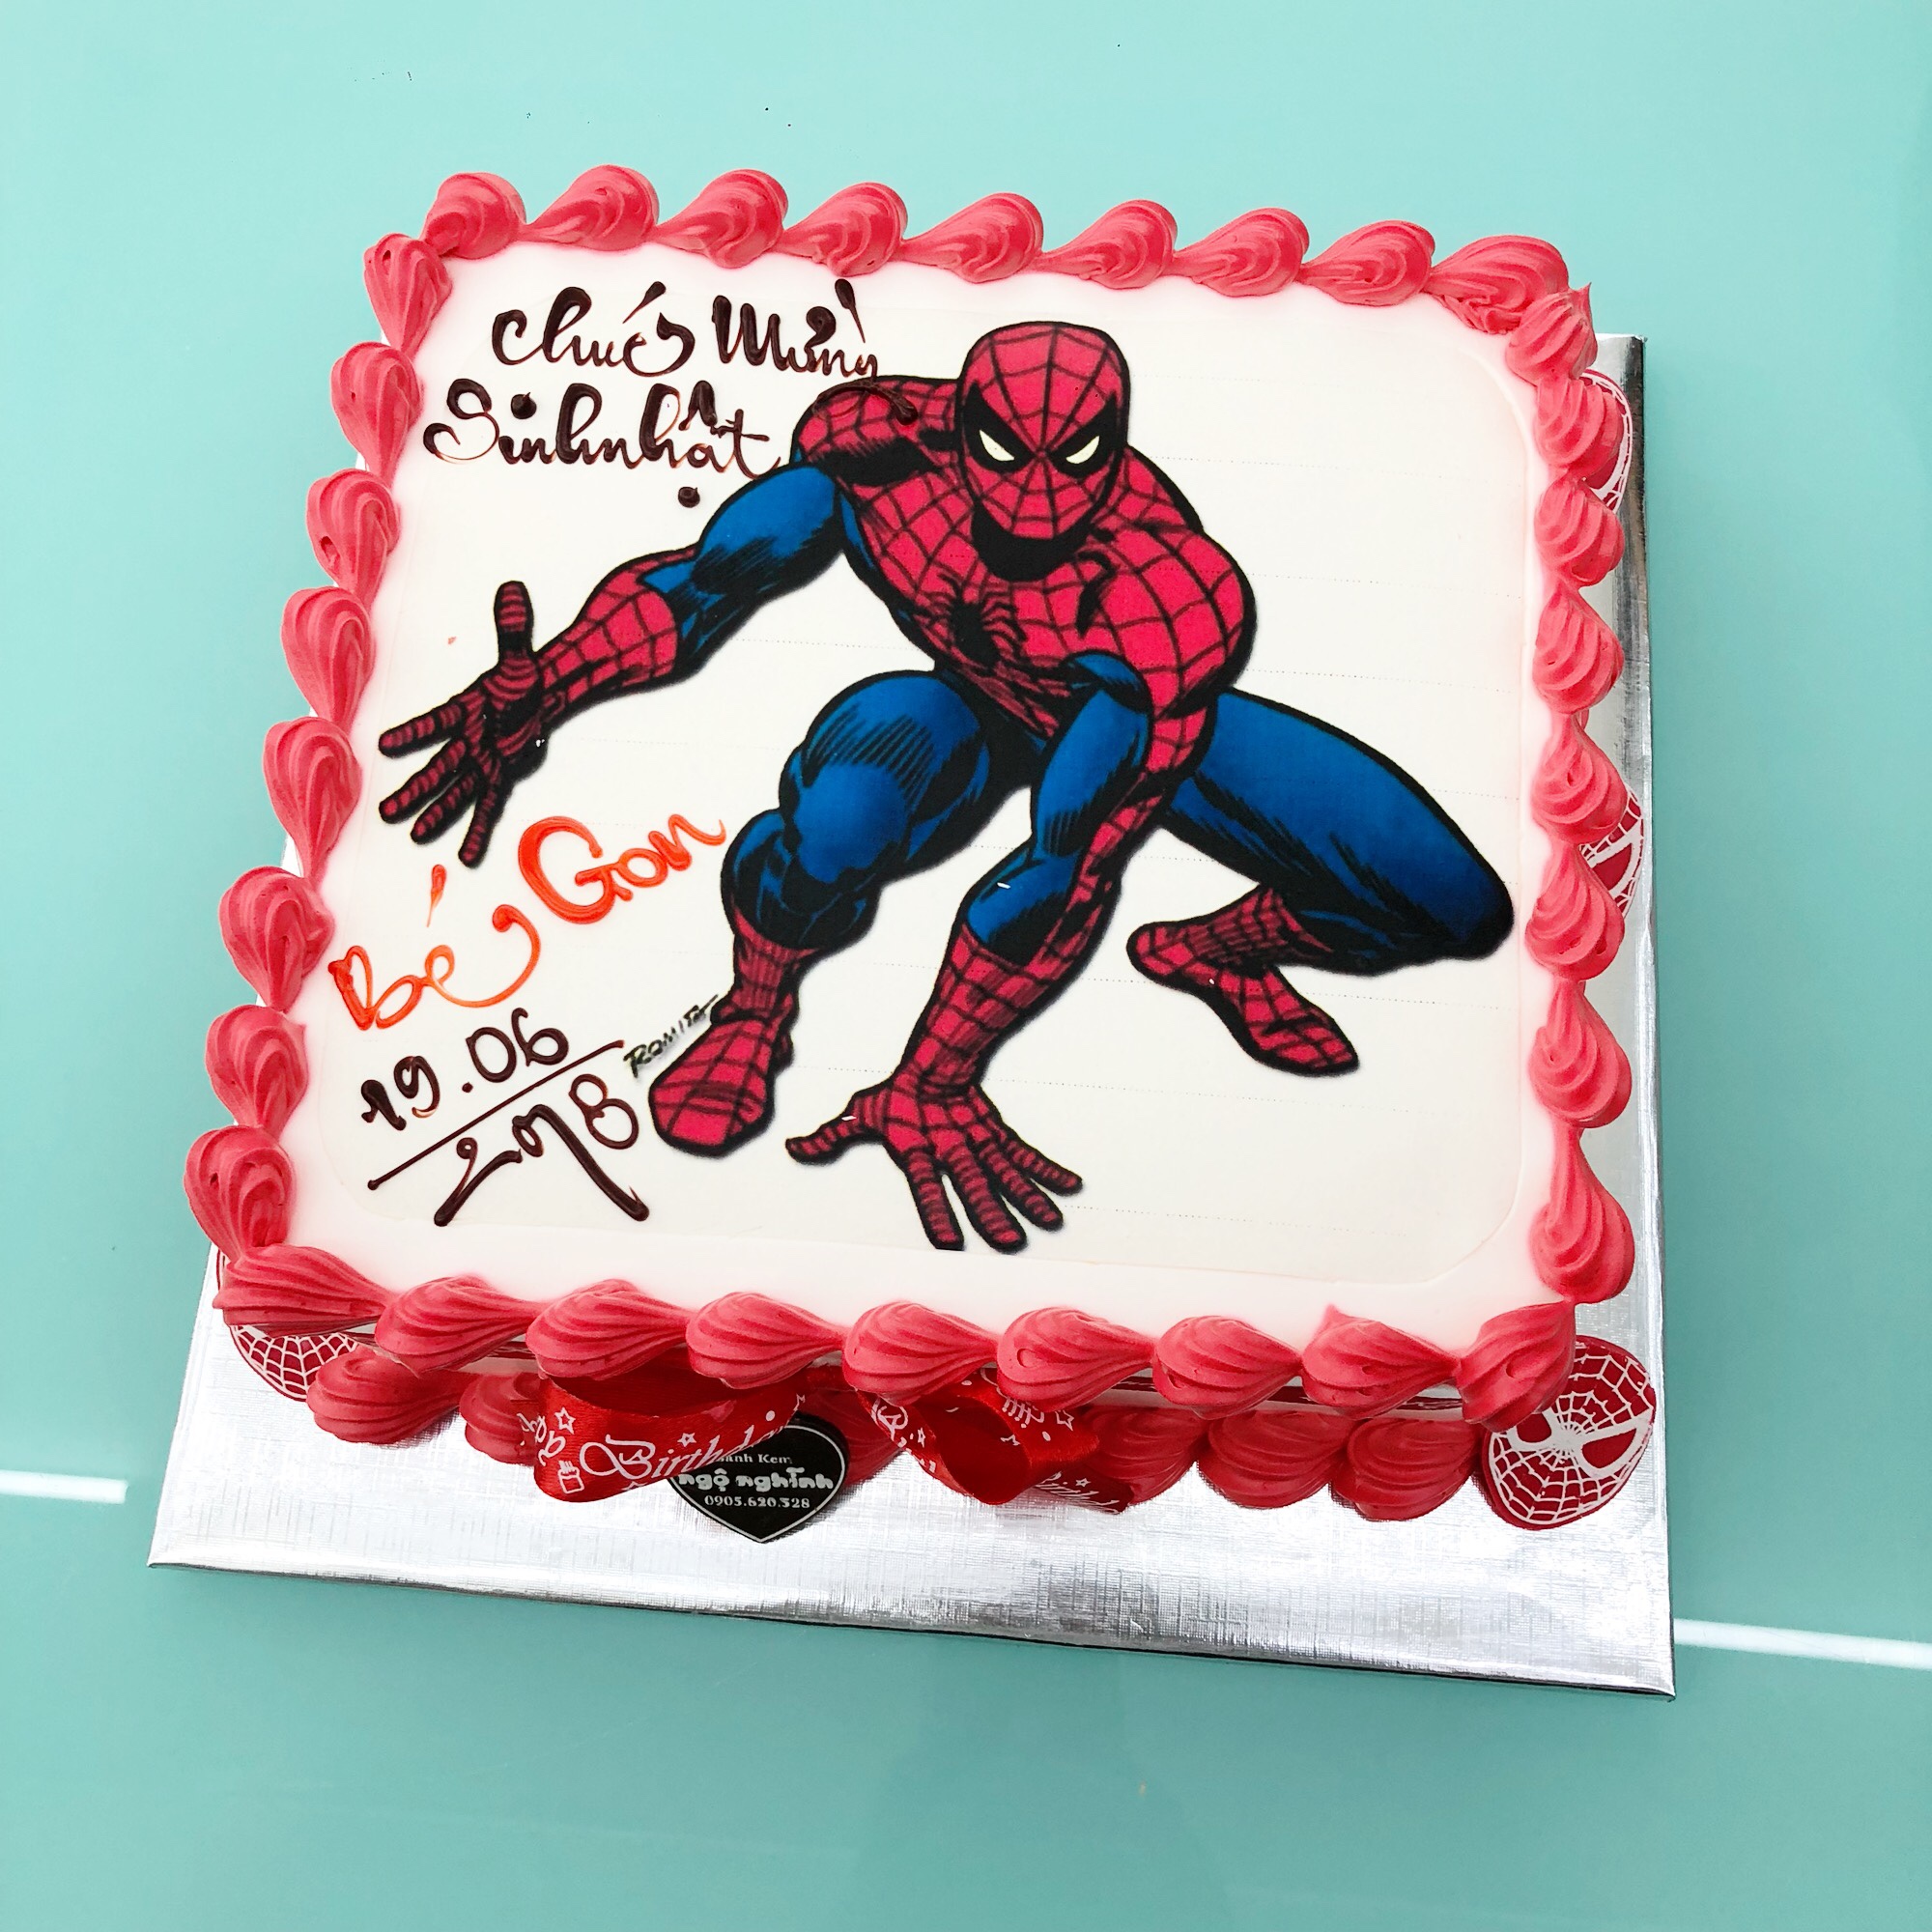 Muốn tặng quà cho bé trai mình một món đặc biệt và dễ thương? Hãy lựa chọn bánh sinh nhật in hình siêu nhân người nhện ngộ nghĩnh này. Với những nét vẽ tinh tế và cute, bánh sẽ là một món quà tuyệt vời và ý nghĩa không chỉ để ăn mà còn để lưu giữ những kỷ niệm đáng nhớ.